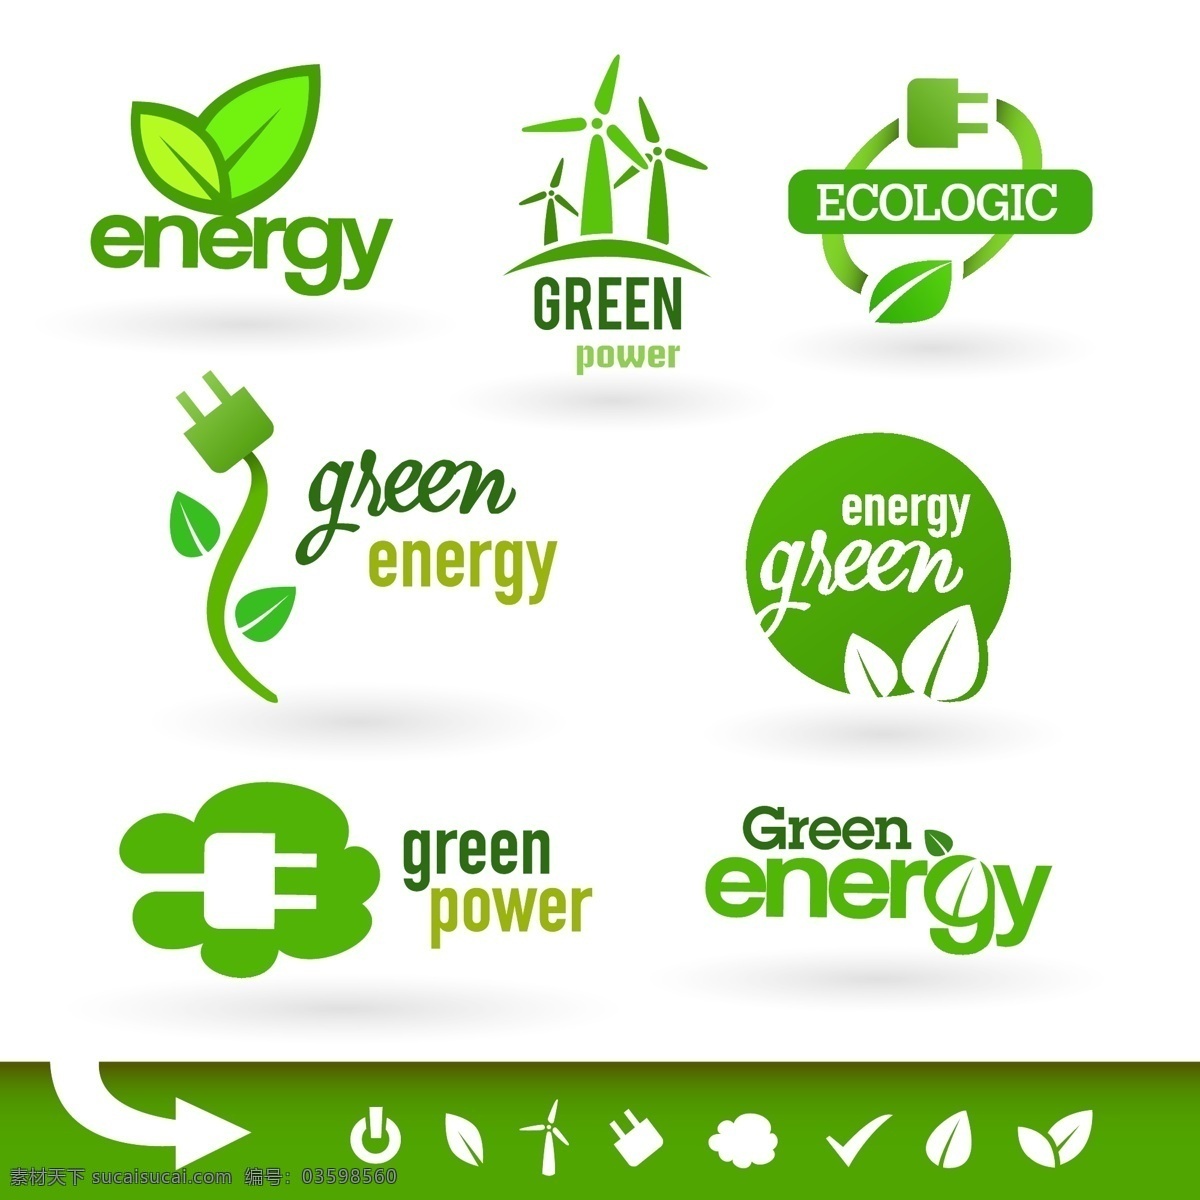 eco 环保 图标 保护环境 环境保护 清洁能源 环保图标 环保标志 节能标志 节能环保 绿色节能 环保设计 节能图标 绿色科技 绿色能源 减排 绿叶 自然 自然环境 icon 标志图标 其他图标